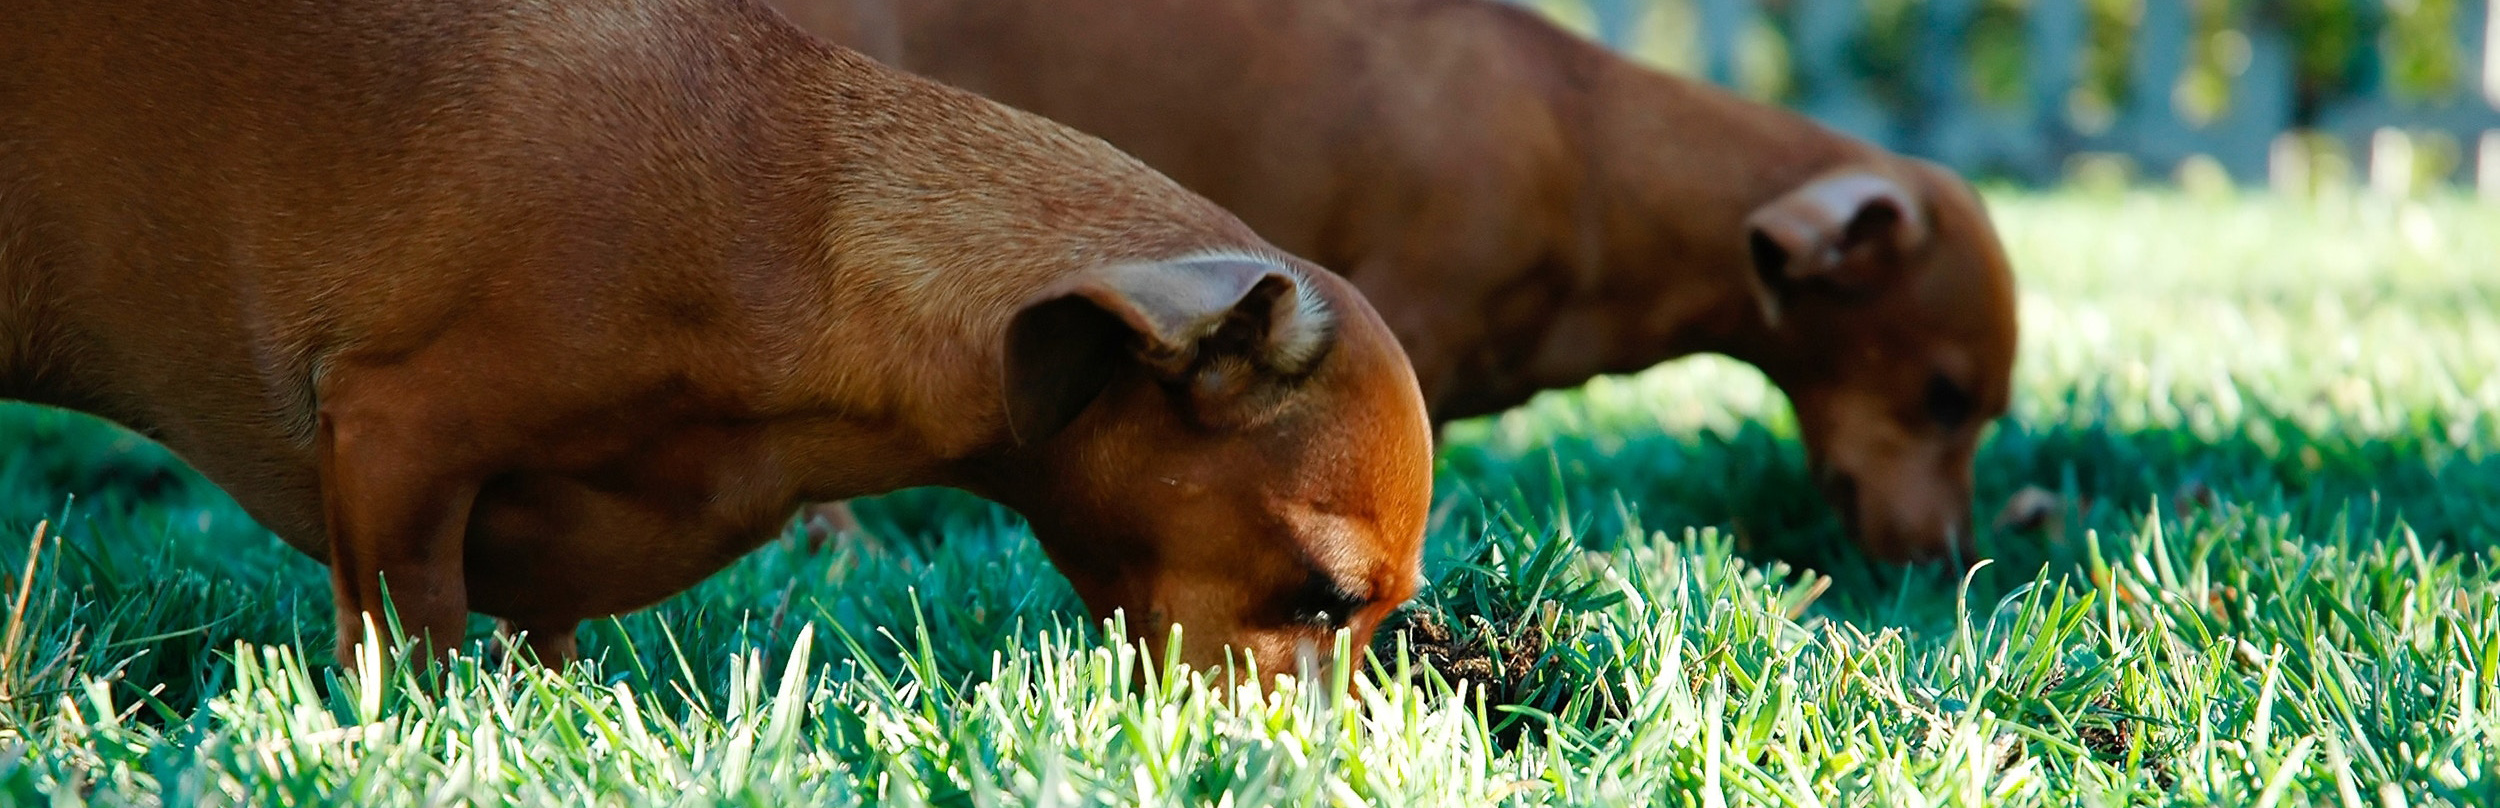  Deux teckels bruns mangeant de l'herbe 